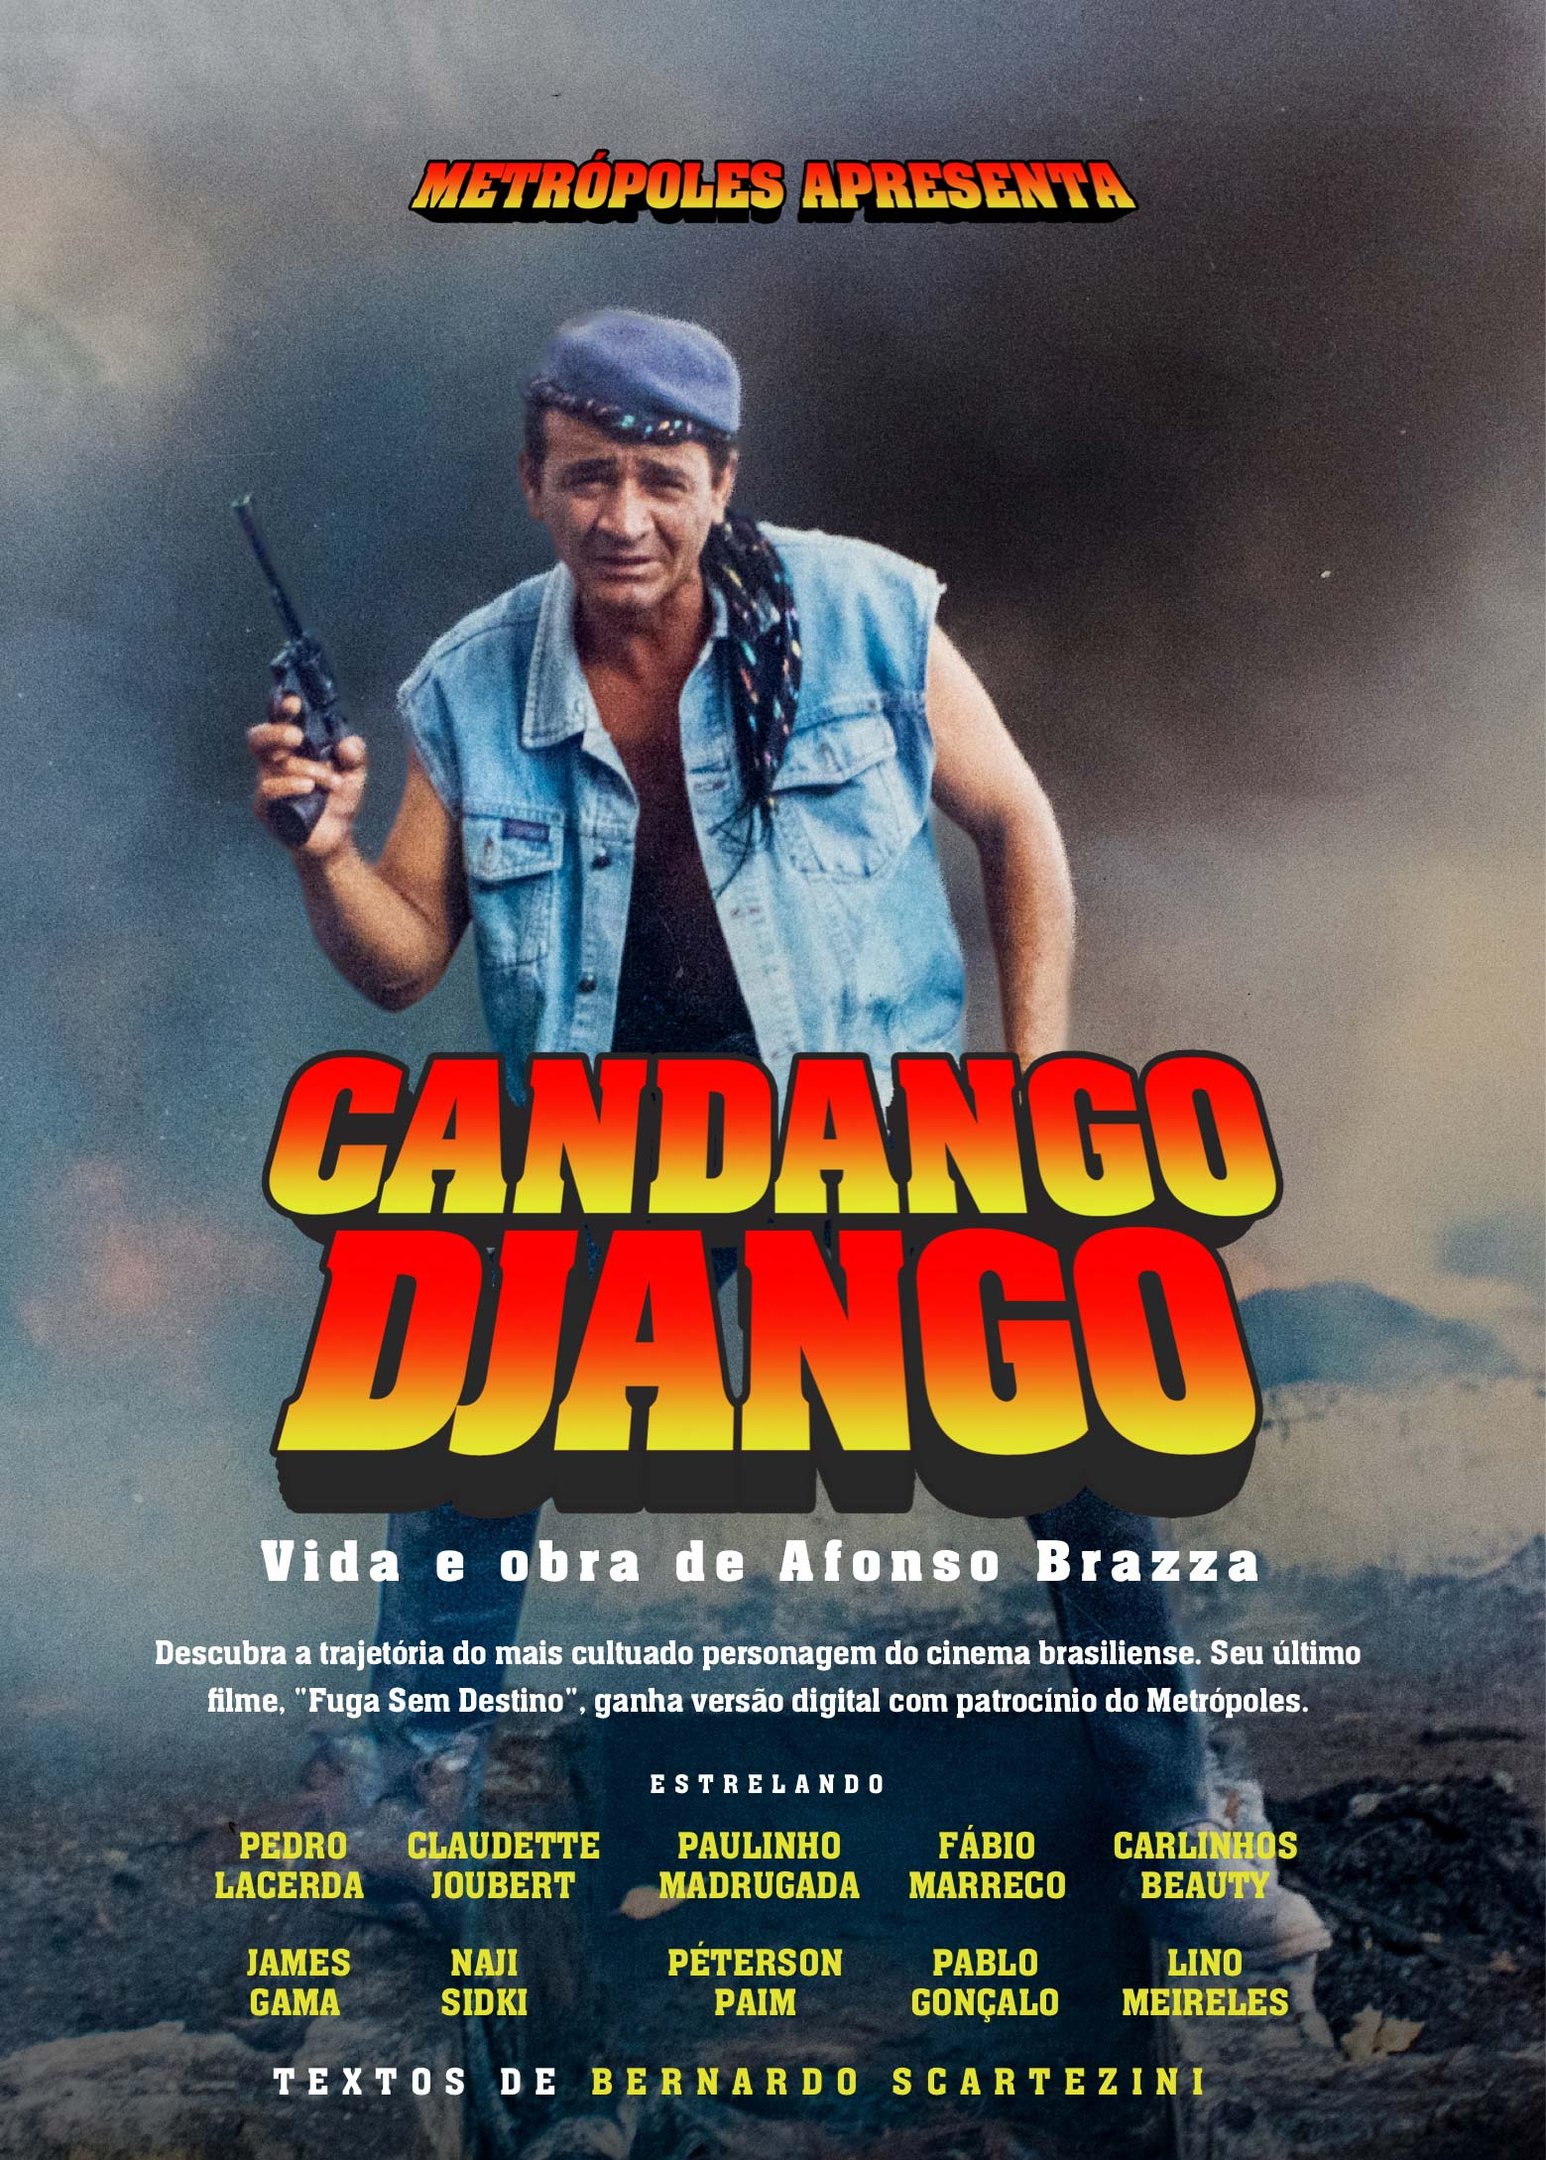 Candango Django